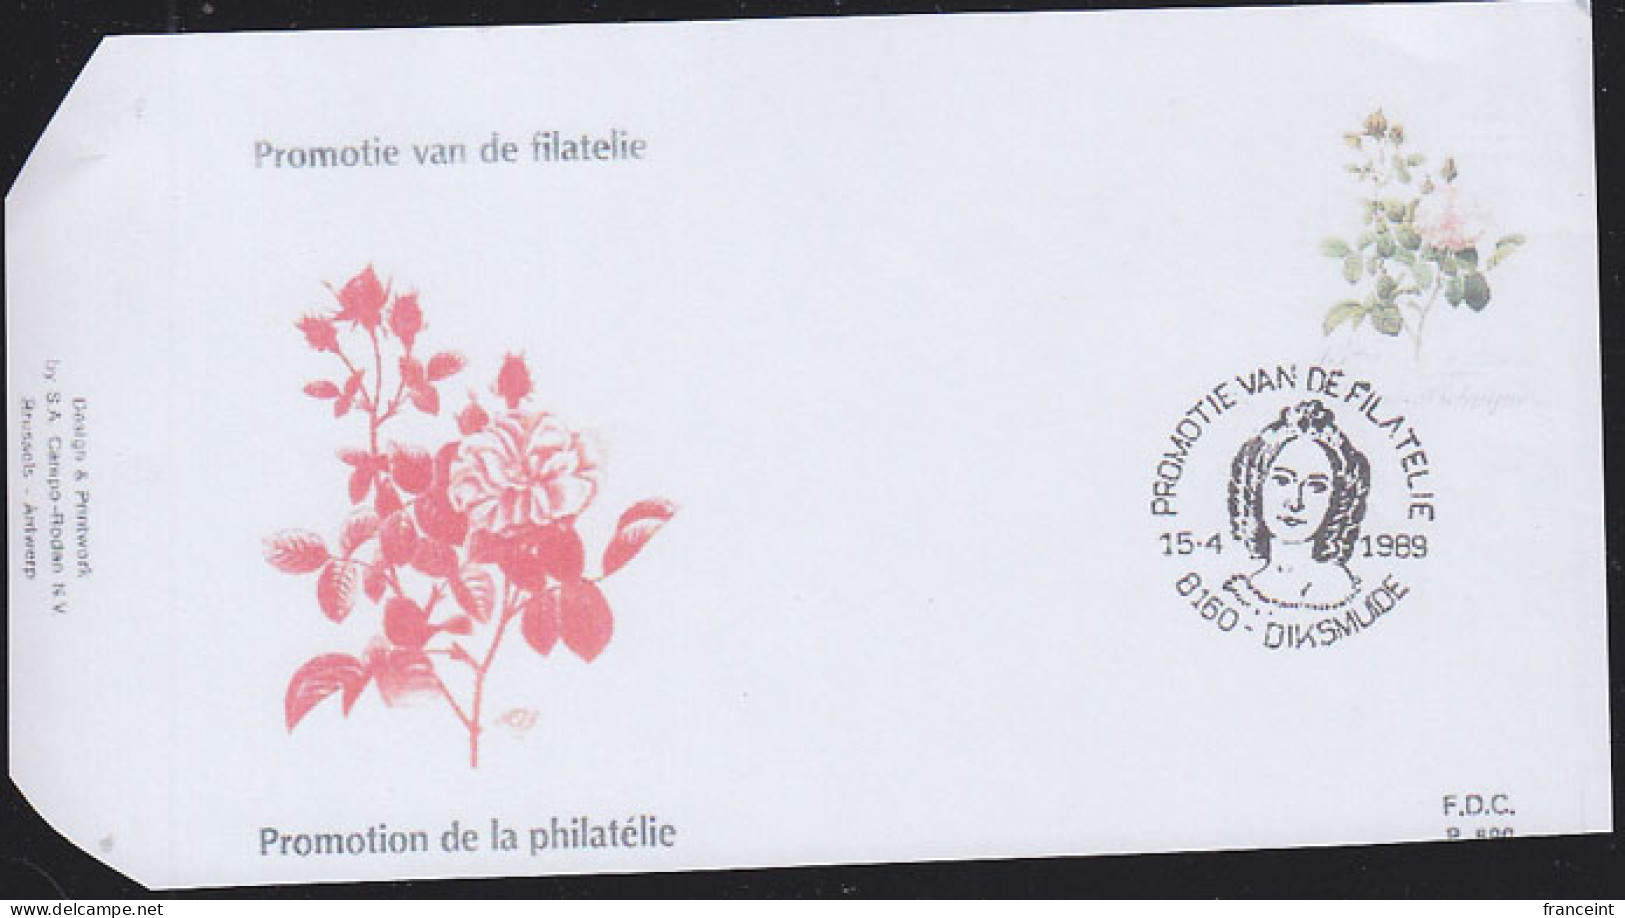 BELGIUM(1989) Centfeuille Unique Melée De Rouge Rose. Die Proof In Violet Signed By The Engraver. Scott No B1081. - Proofs & Reprints